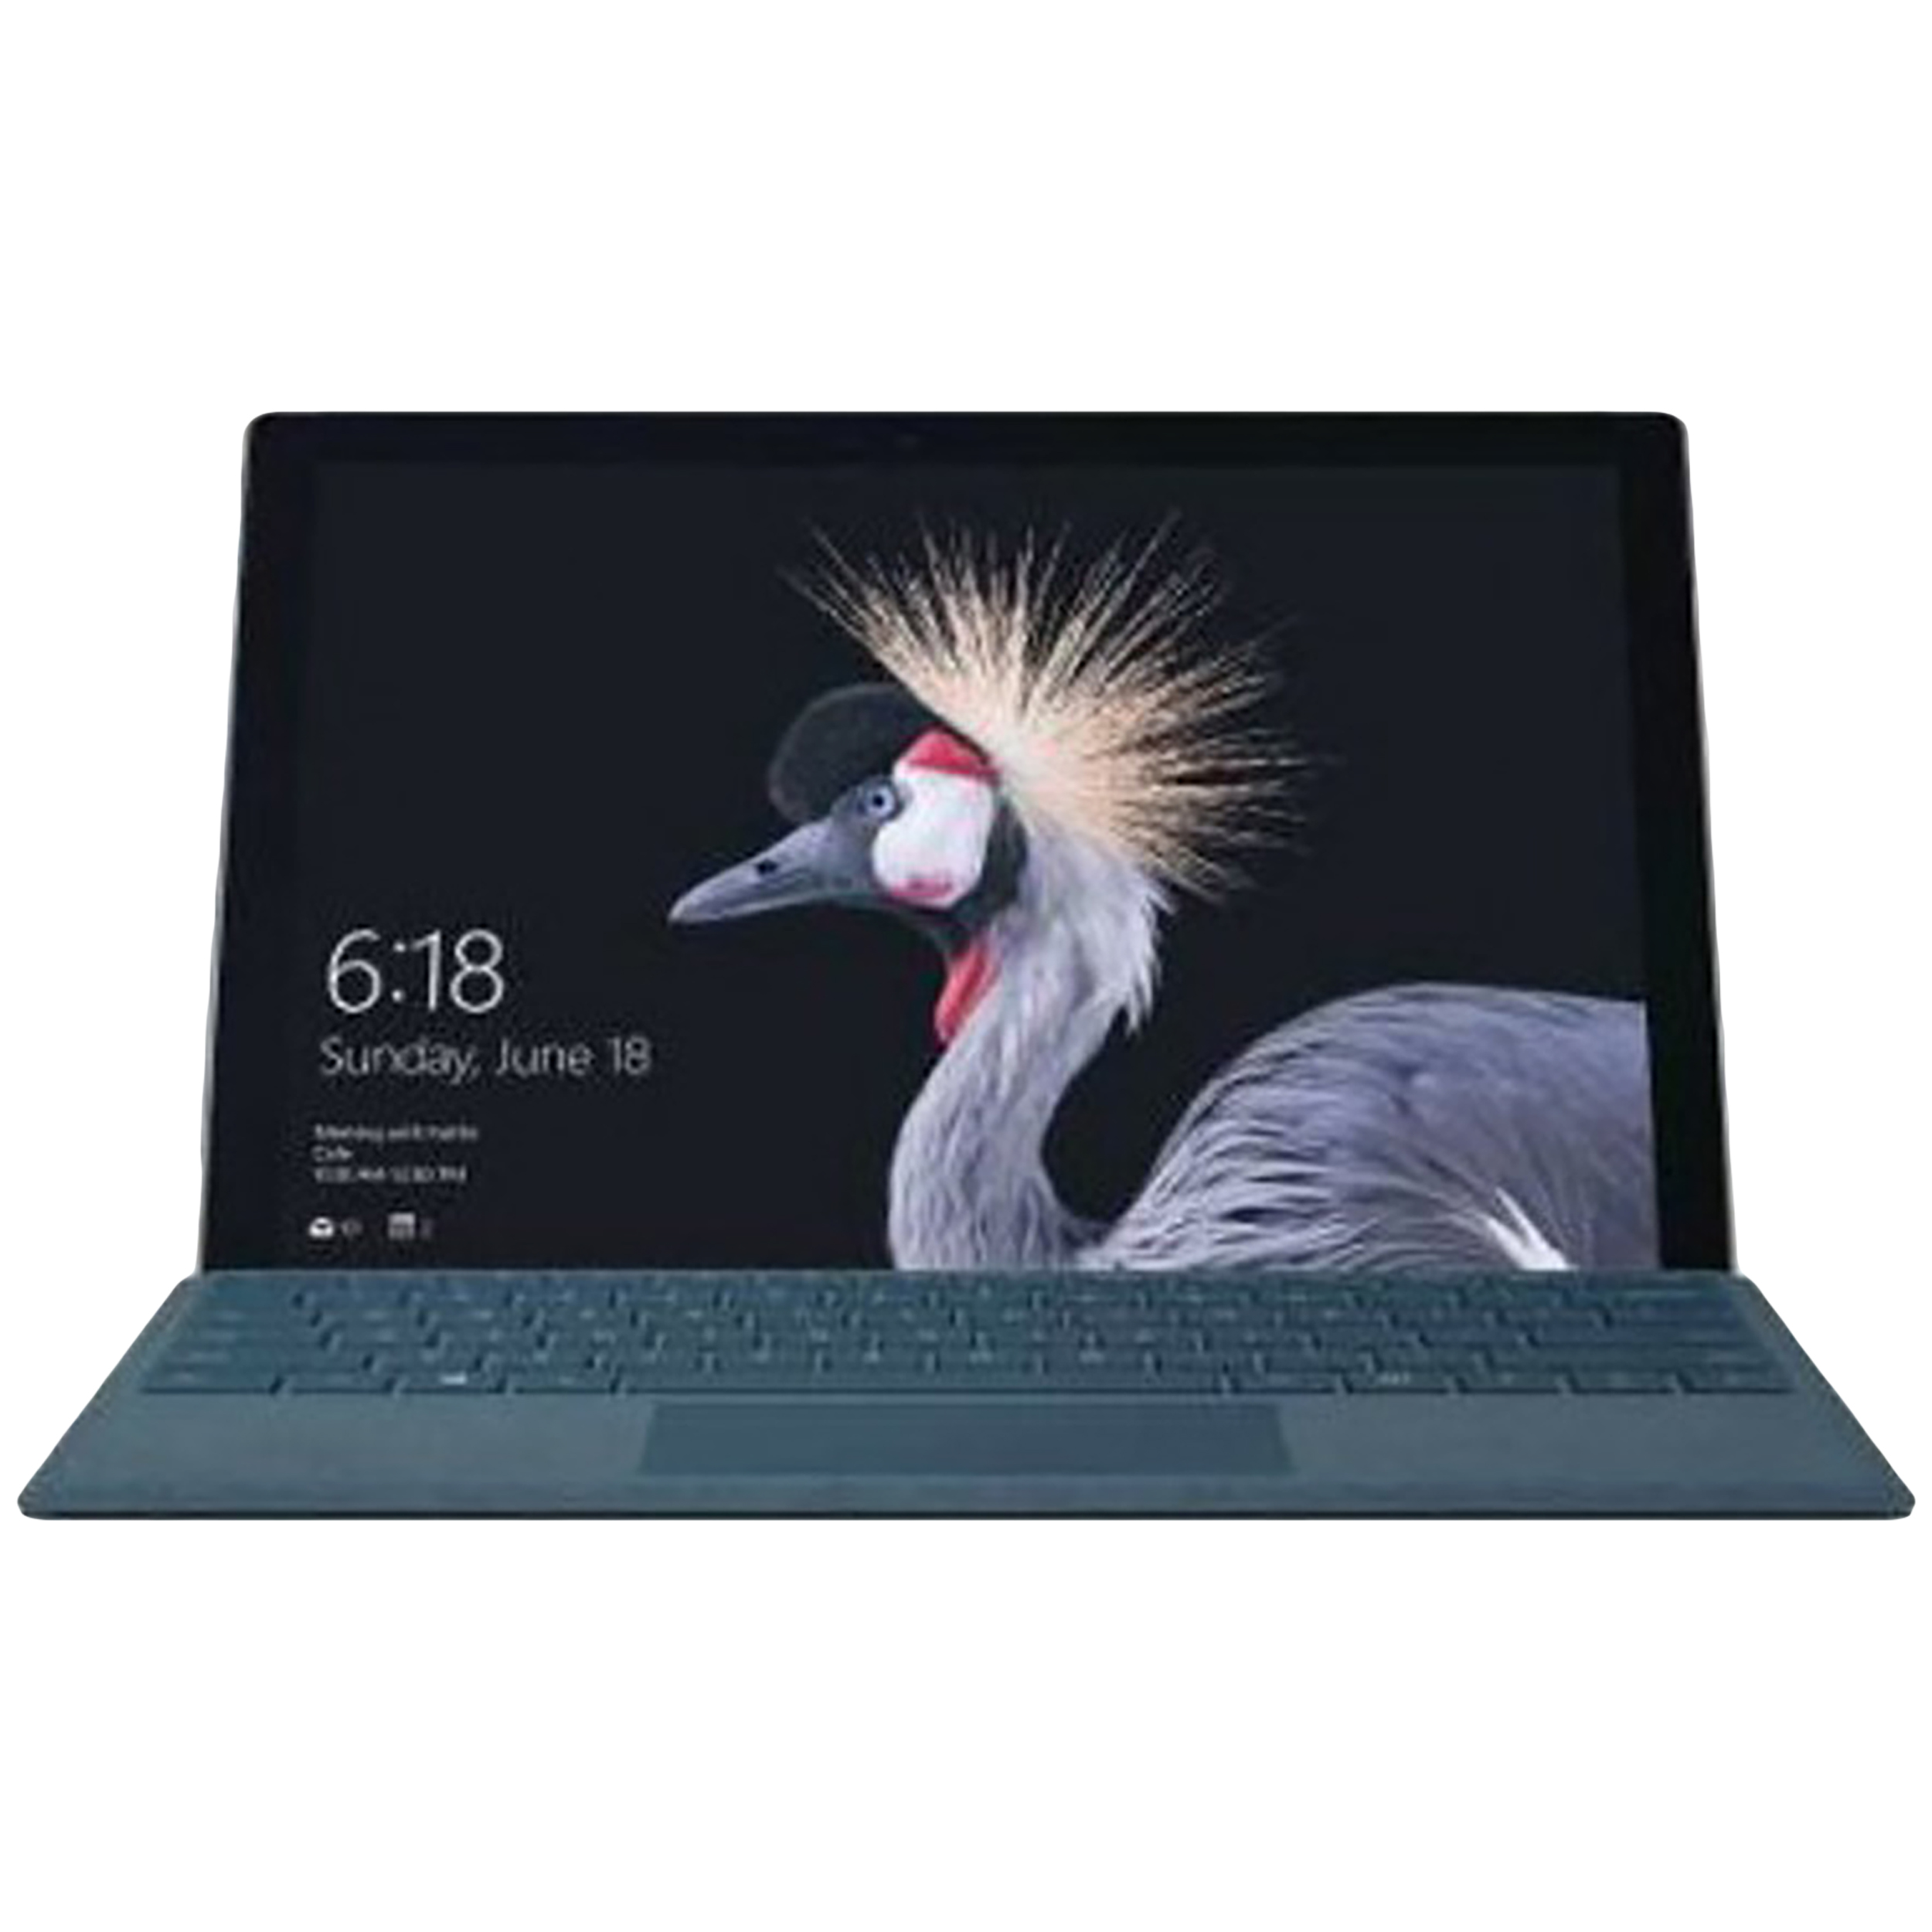 تبلت مایکروسافت مدل Surface Pro 2017 - D به همراه کیبورد مشکی مایکروسافت و محافظ صفحه نمایش Maroo - ظرفیت 256 گیگابایت